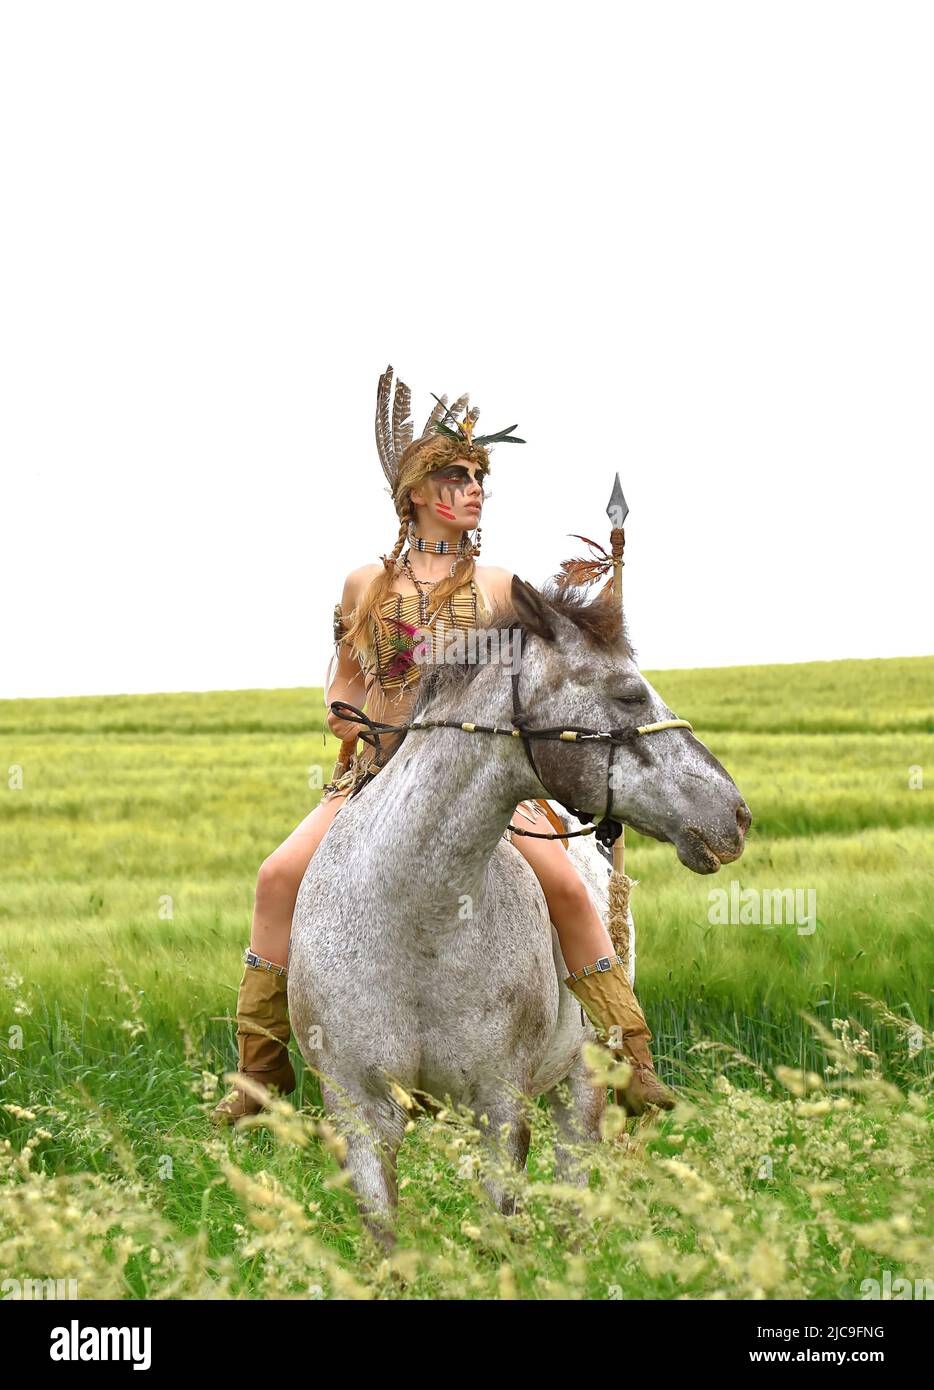 Ein junges indisches Mädchen wird im Prarie auf ihrem Pony reiten gesehen. Sie ist als Indianerin der Ureinwohner Amerikas verkleidet und hält einen Speer in der Hand. Stockfoto